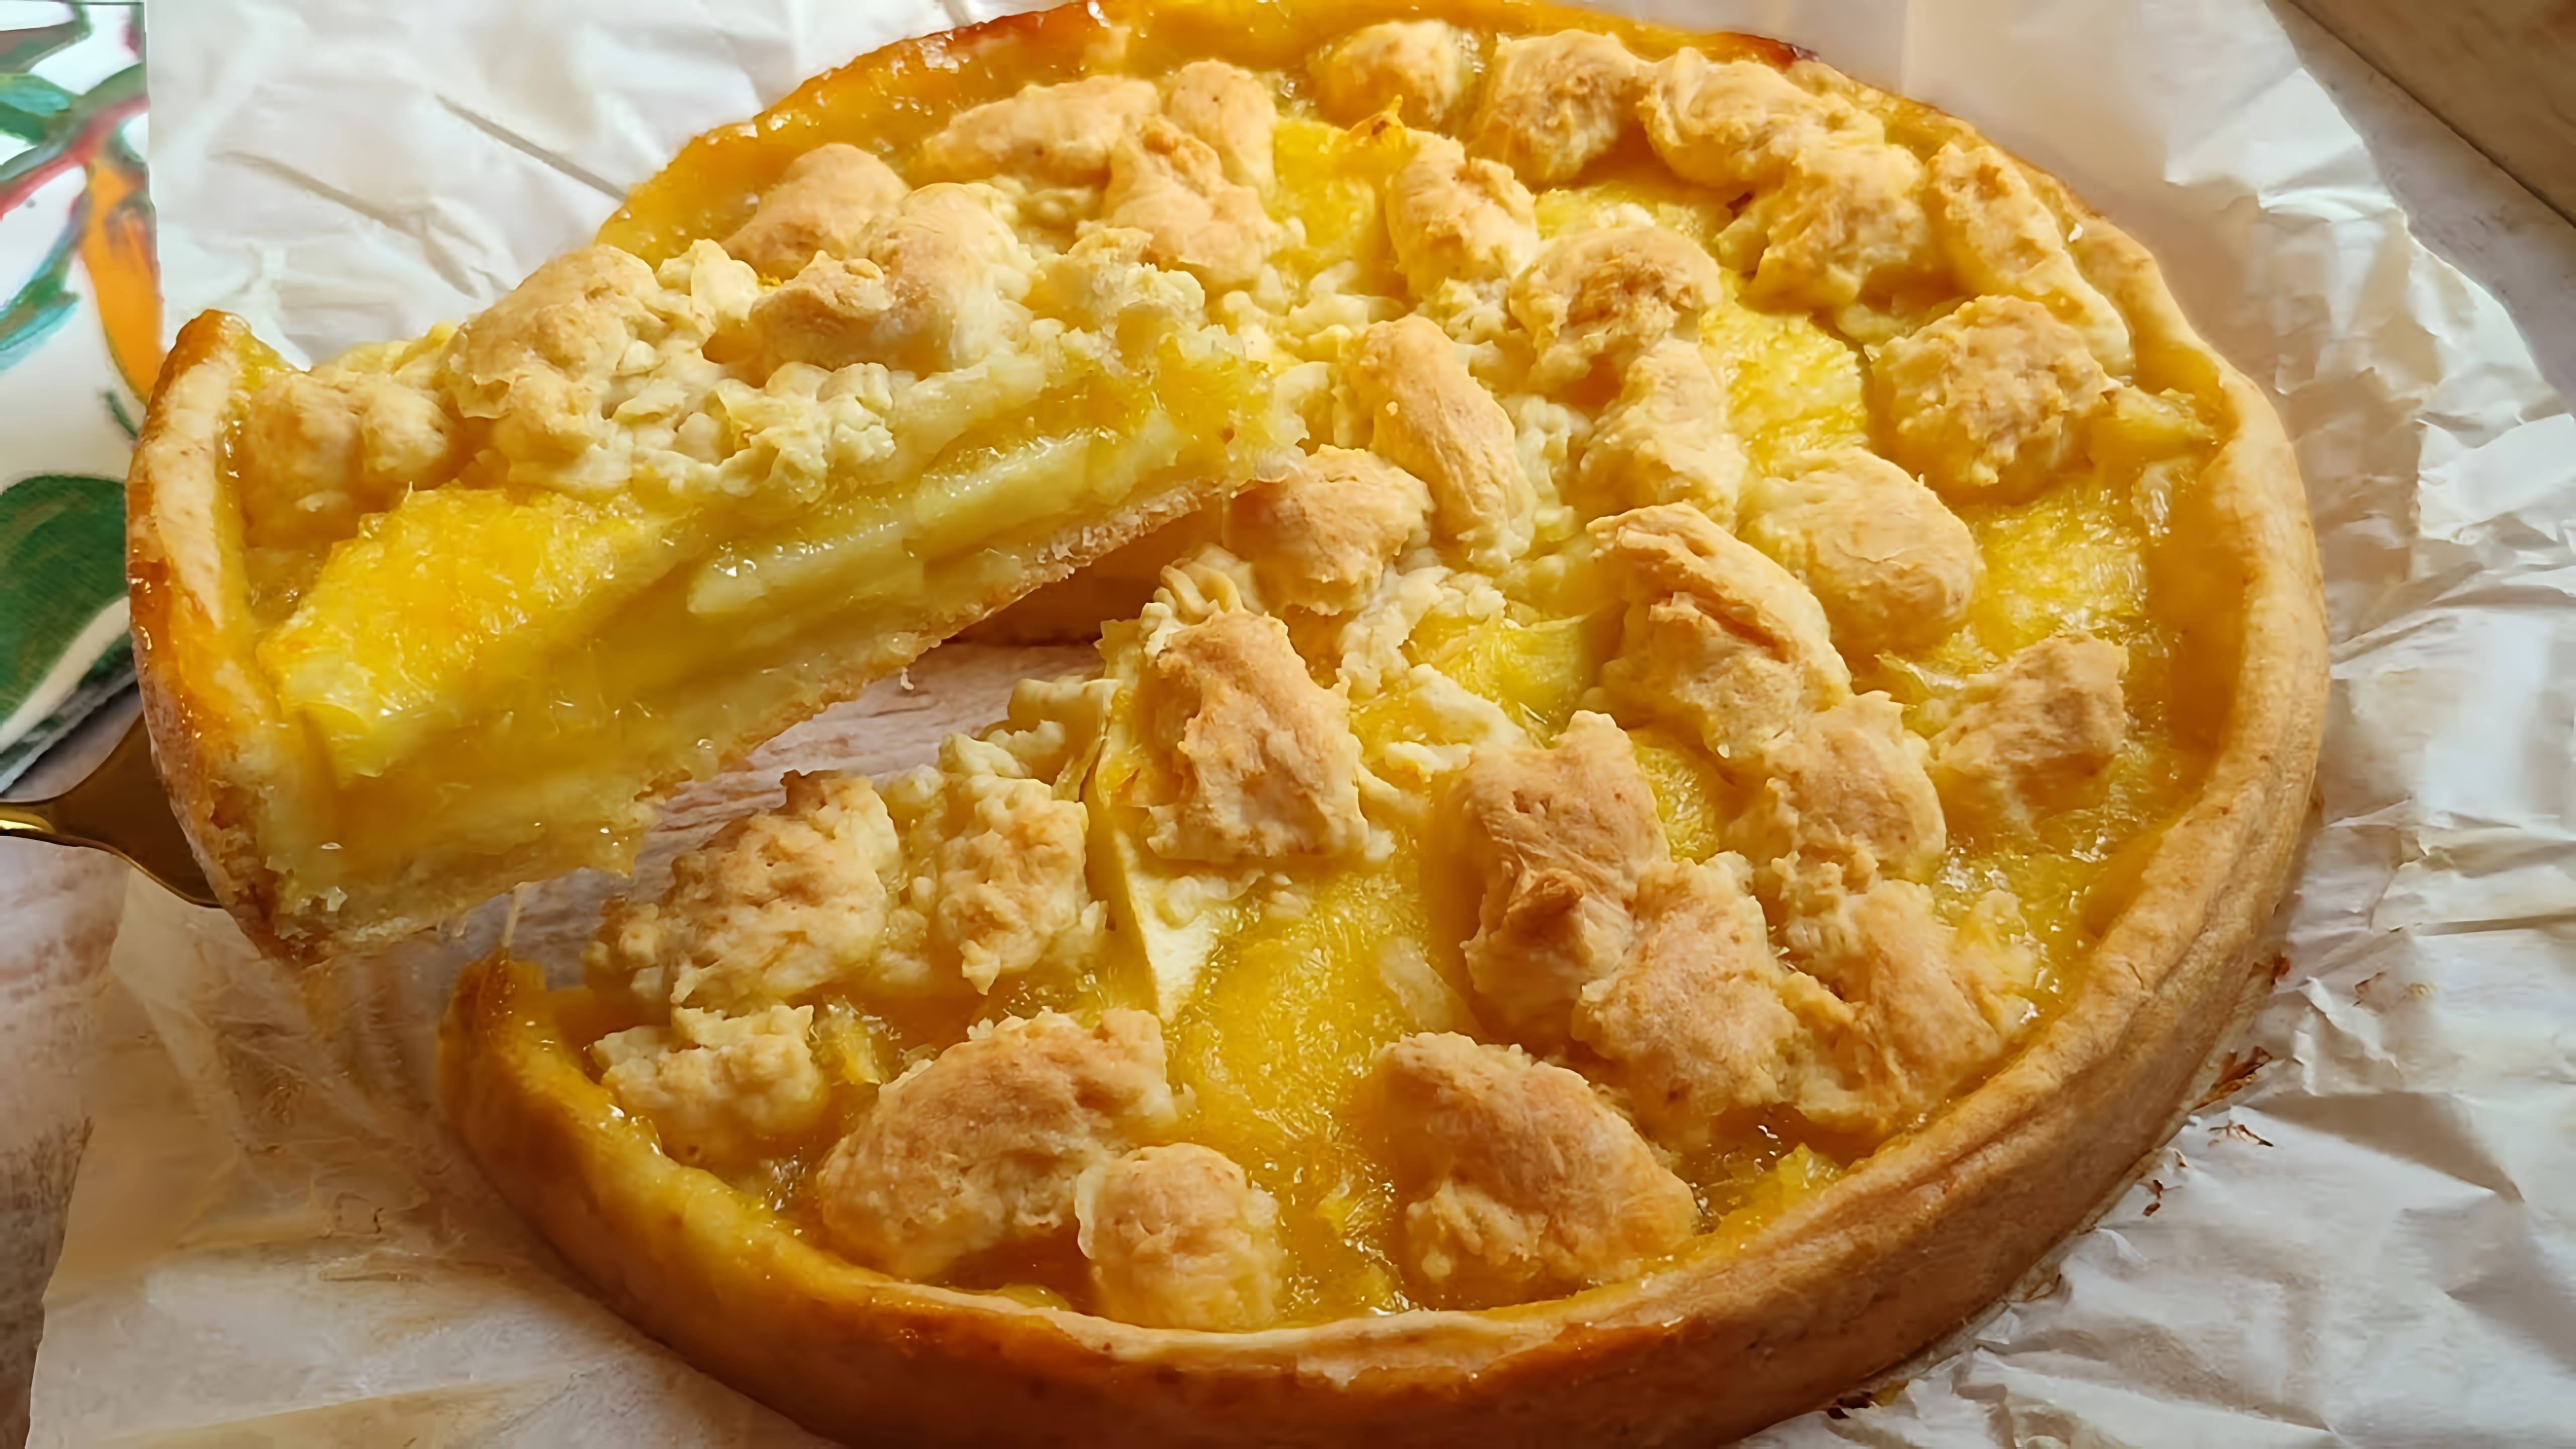 В этом видео демонстрируется процесс приготовления бесподобного лимонного пирога с сочной яблочной начинкой